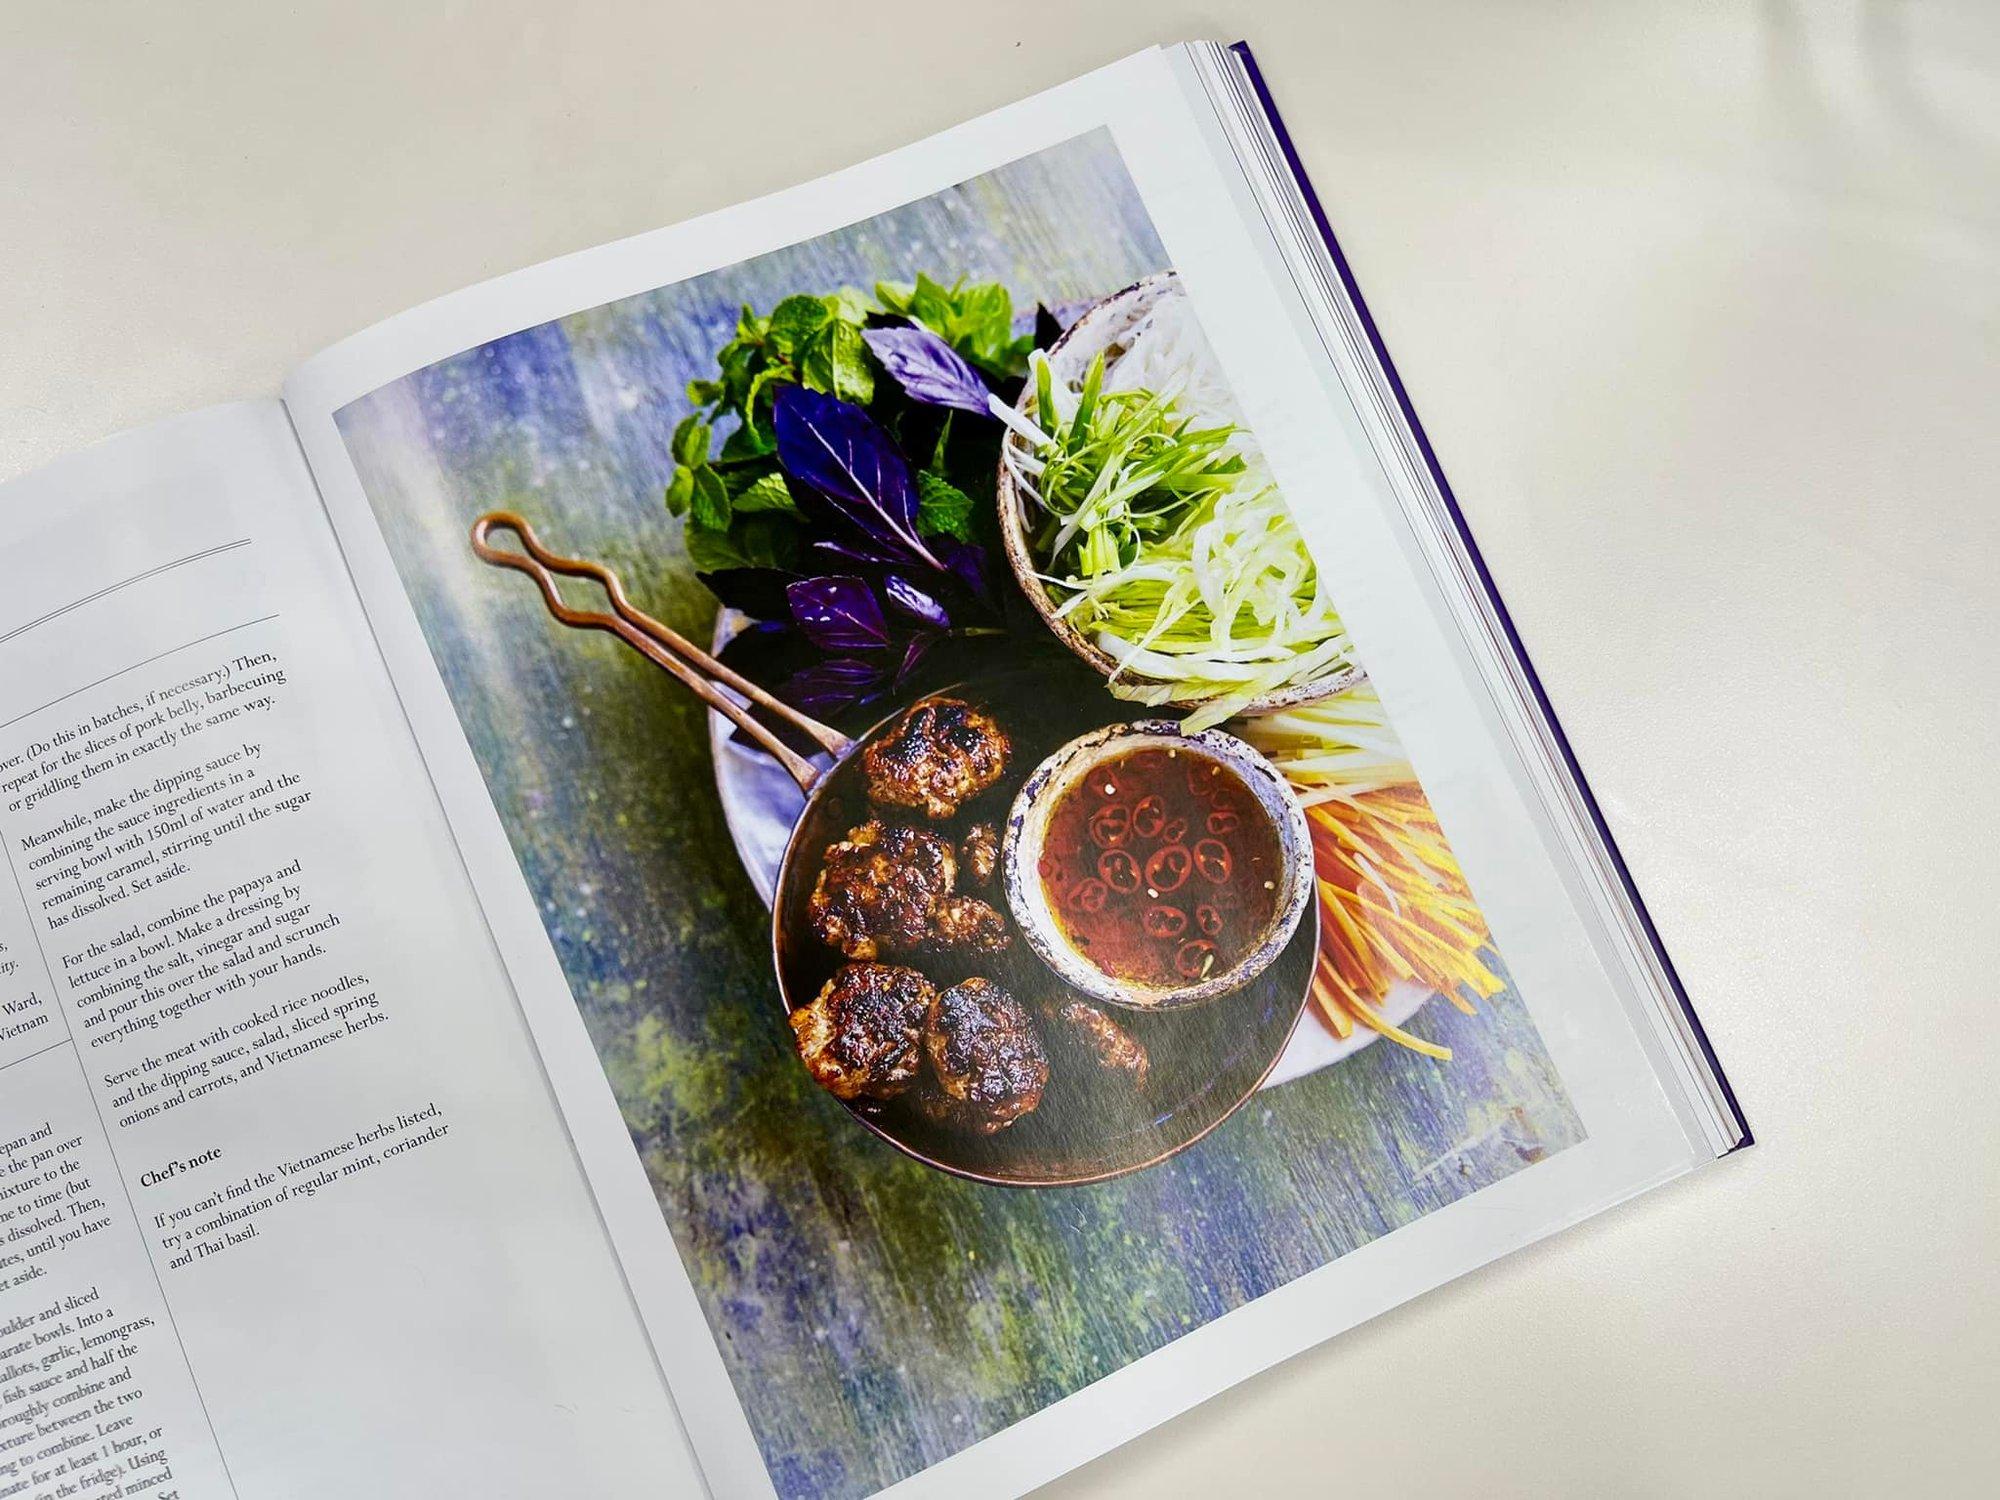 Bún chả Hà Nội được đưa vào cuốn sách dạy nấu ăn mừng Đại lễ Bạch kim của Nữ hoàng Anh - 2